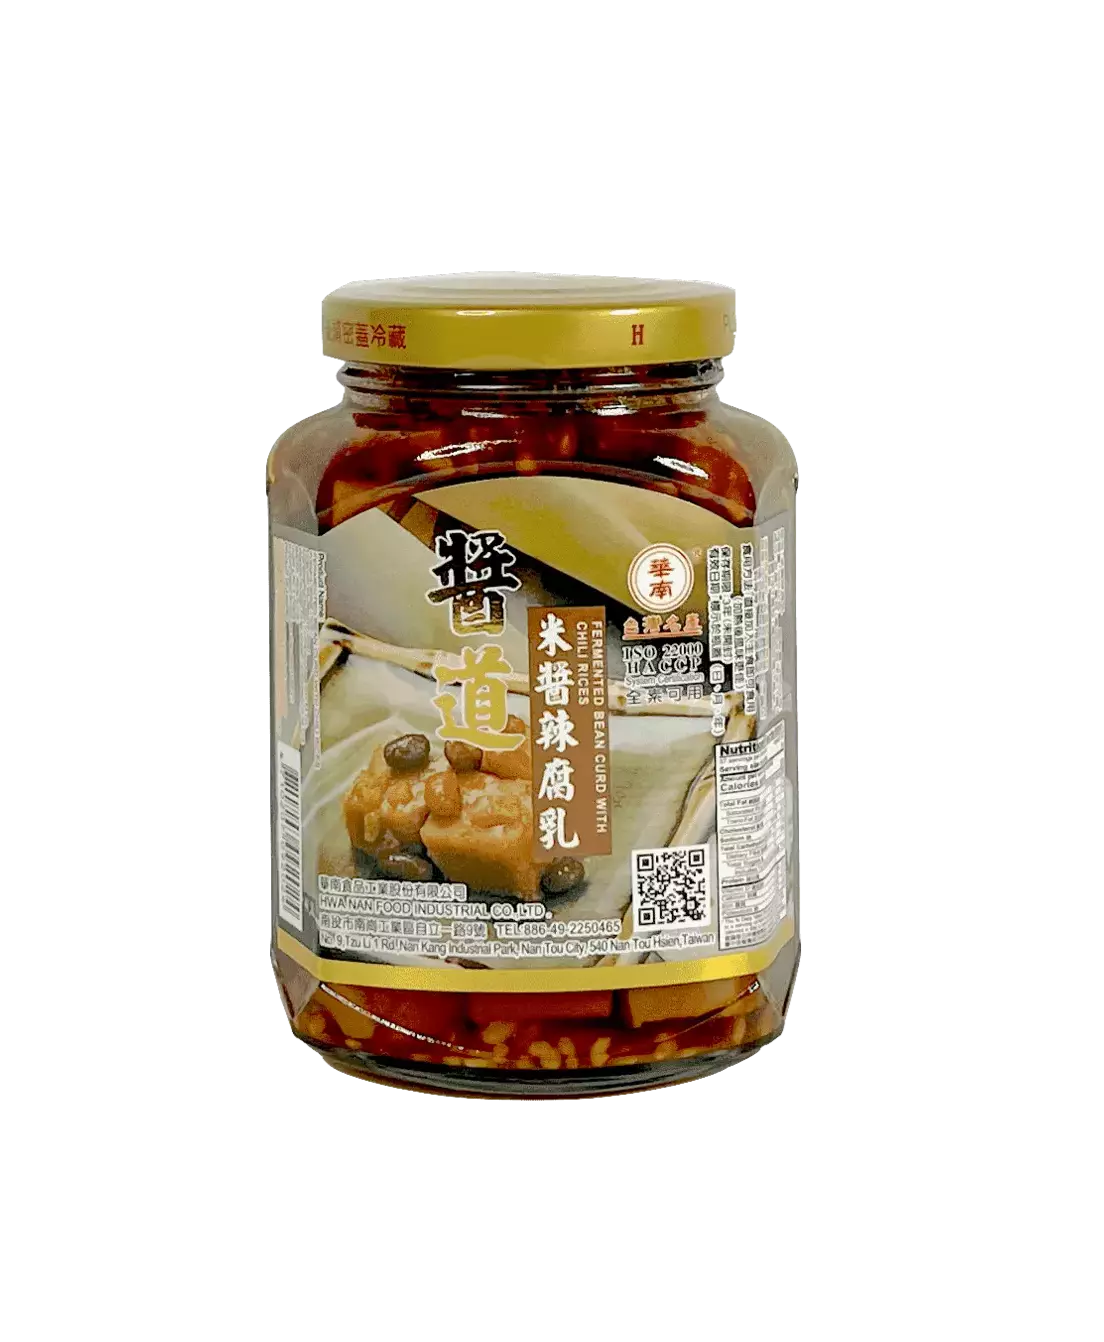 Fermented Tofu With Chili / Rice 369g Mi Jiang La Fu Ru Huanan Taiwan